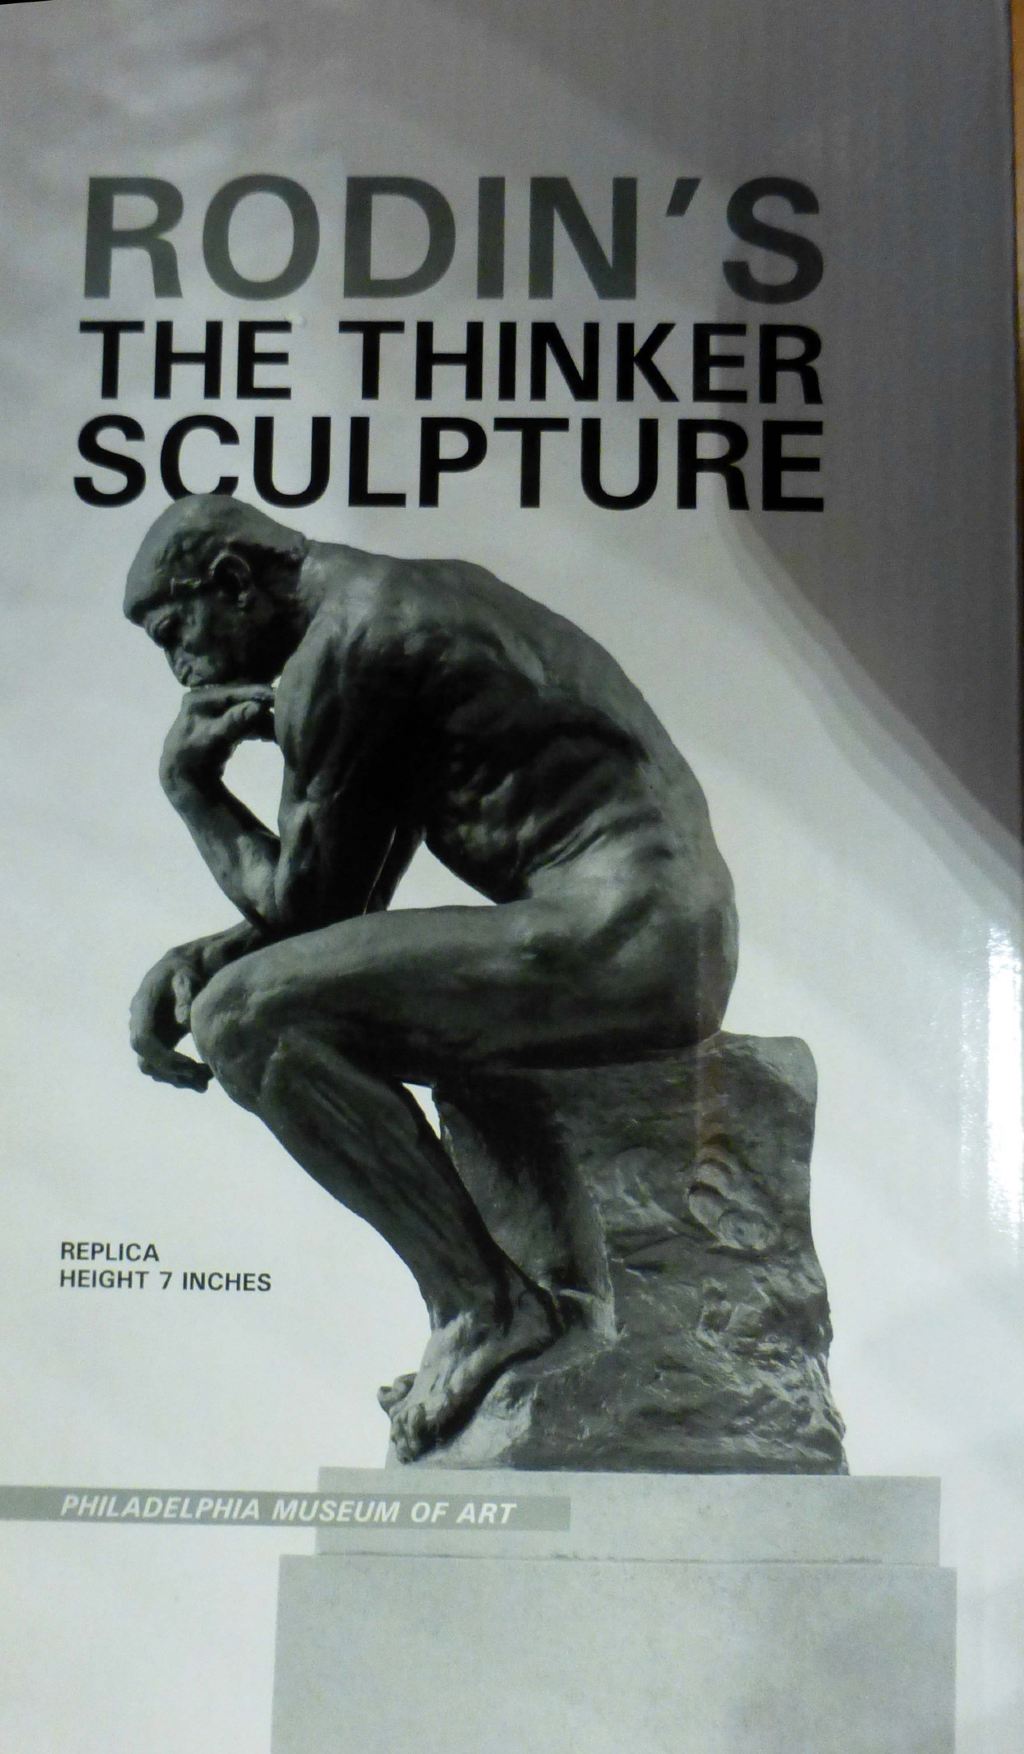 美国 费城 欣赏雕塑家罗丹的作品 - 思想者